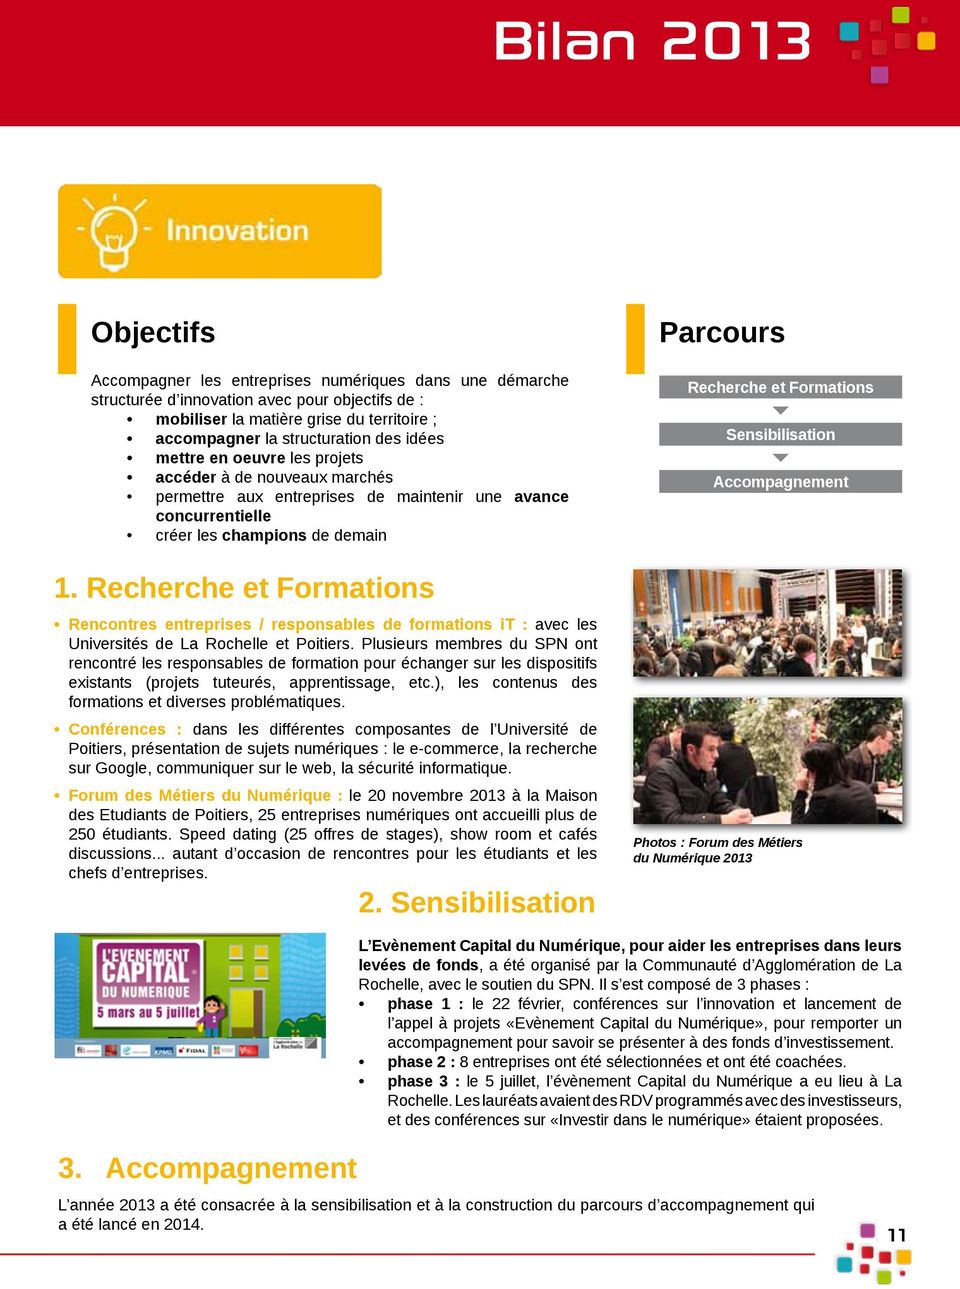 Recherche et Formations Rencontres entreprises / responsables de formations it : avec les Universités de La Rochelle et Poitiers.